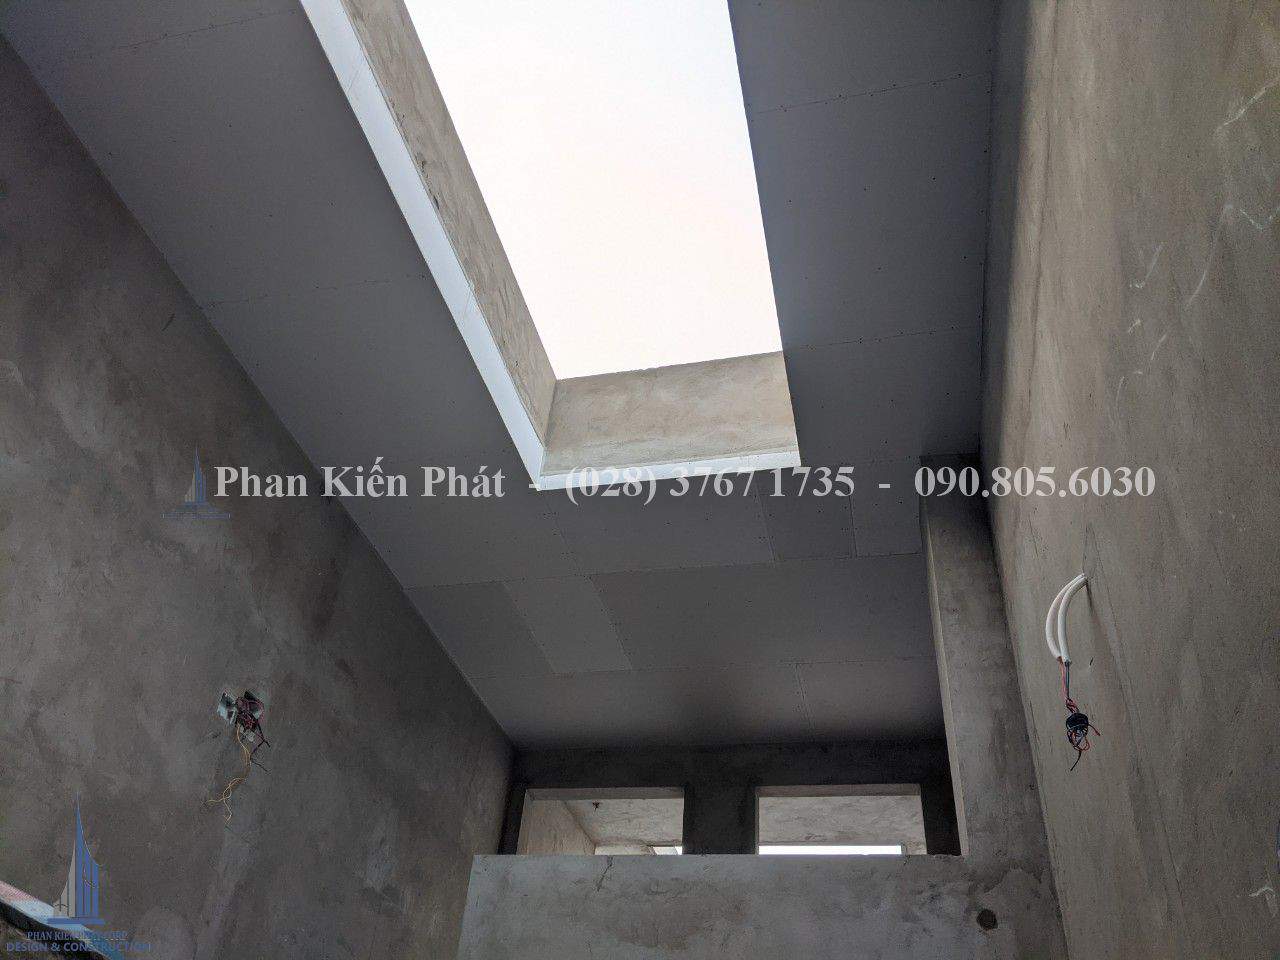 Thi công xây dựng nhà ở hiện đại anh Vũ - Cà Mau | Phan Kiến Phát Co.,Ltd